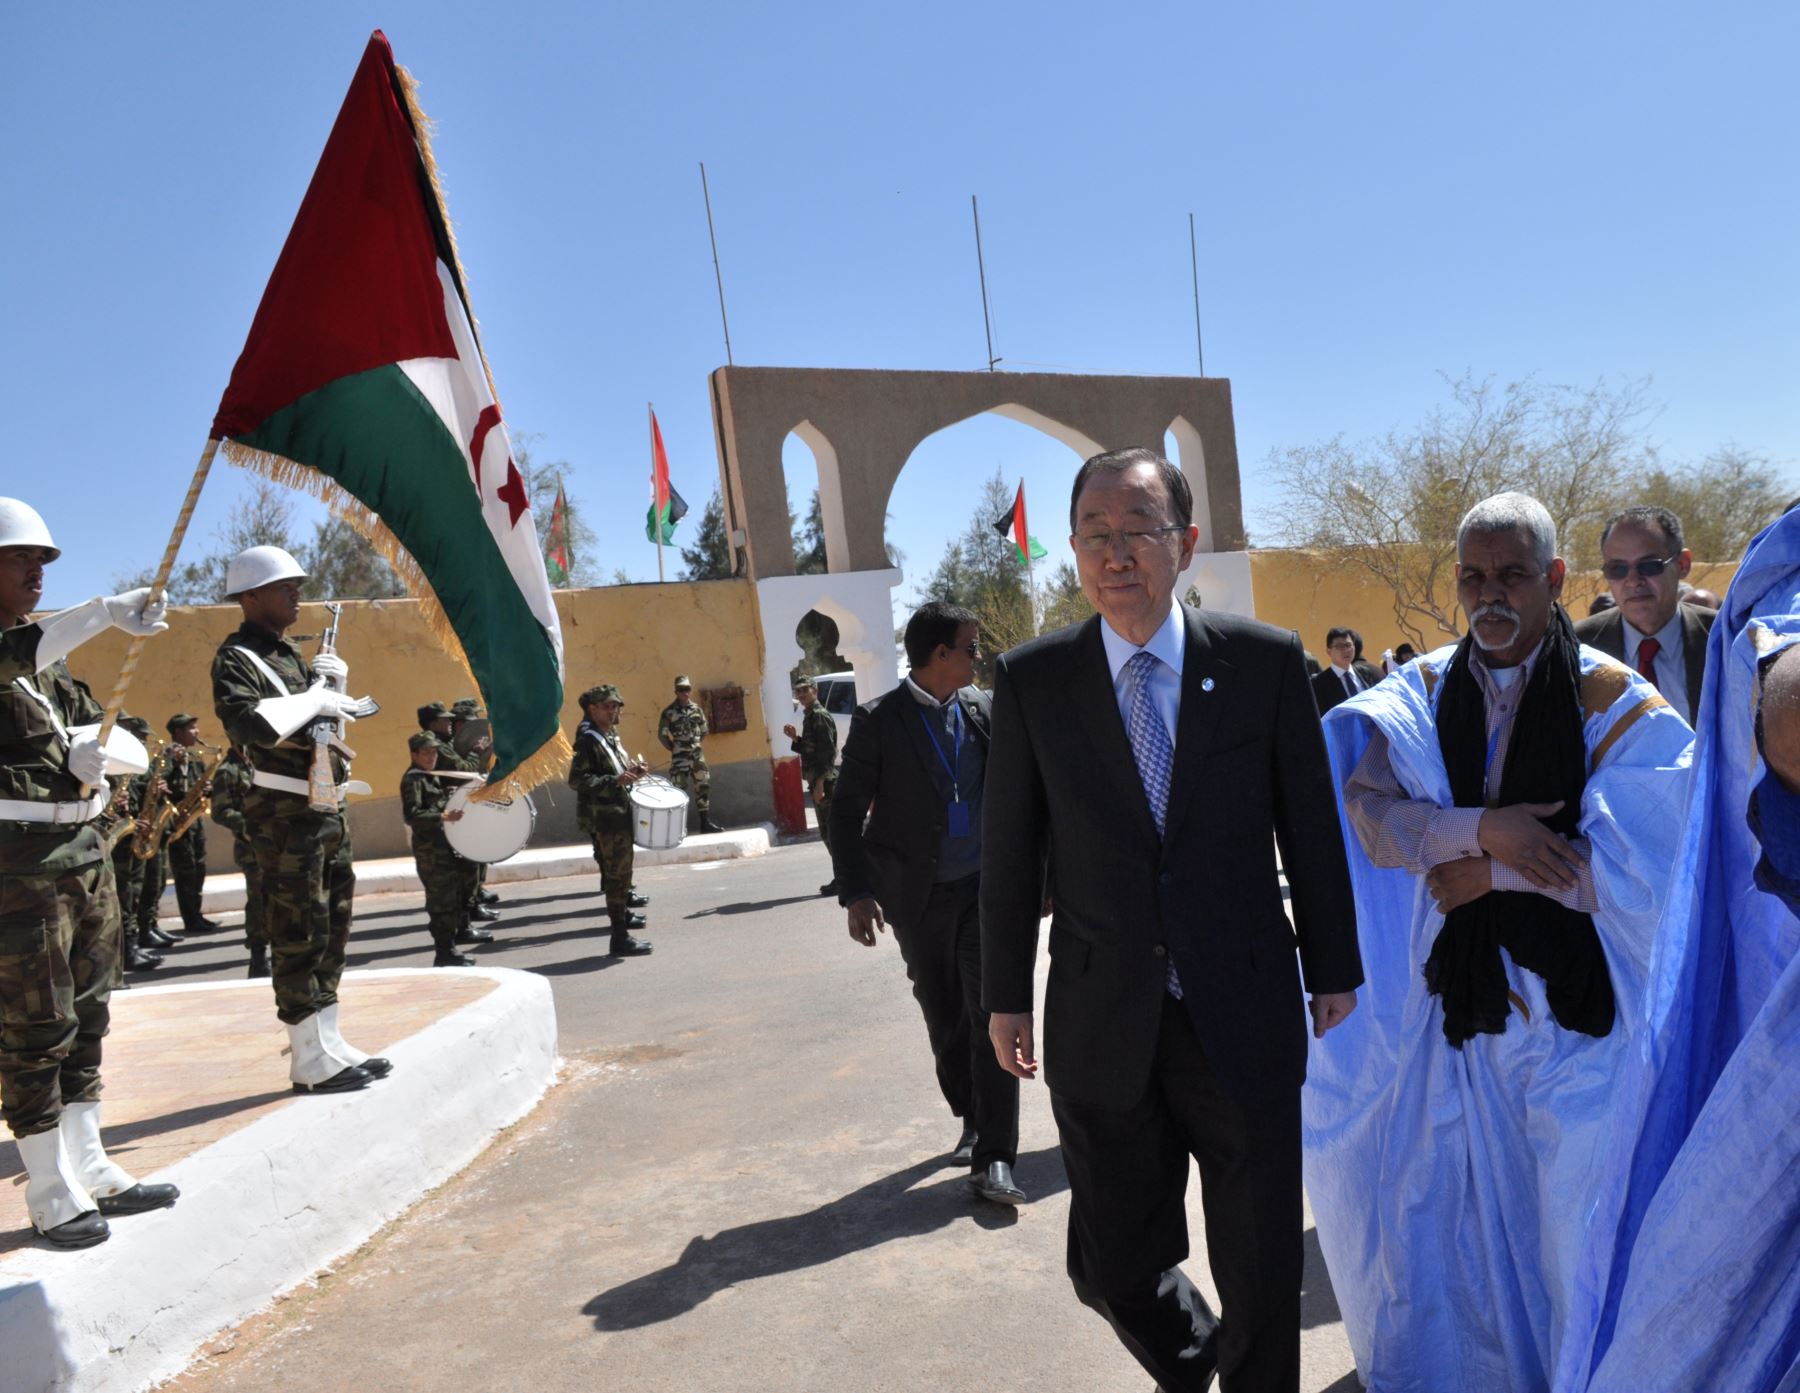 El secretario general Ban Ki-moon llega al campo de refugiados al sur de la ciudad argelina de Tinduf en el territorio disputado del Sahara Occidental. Foto: AFP